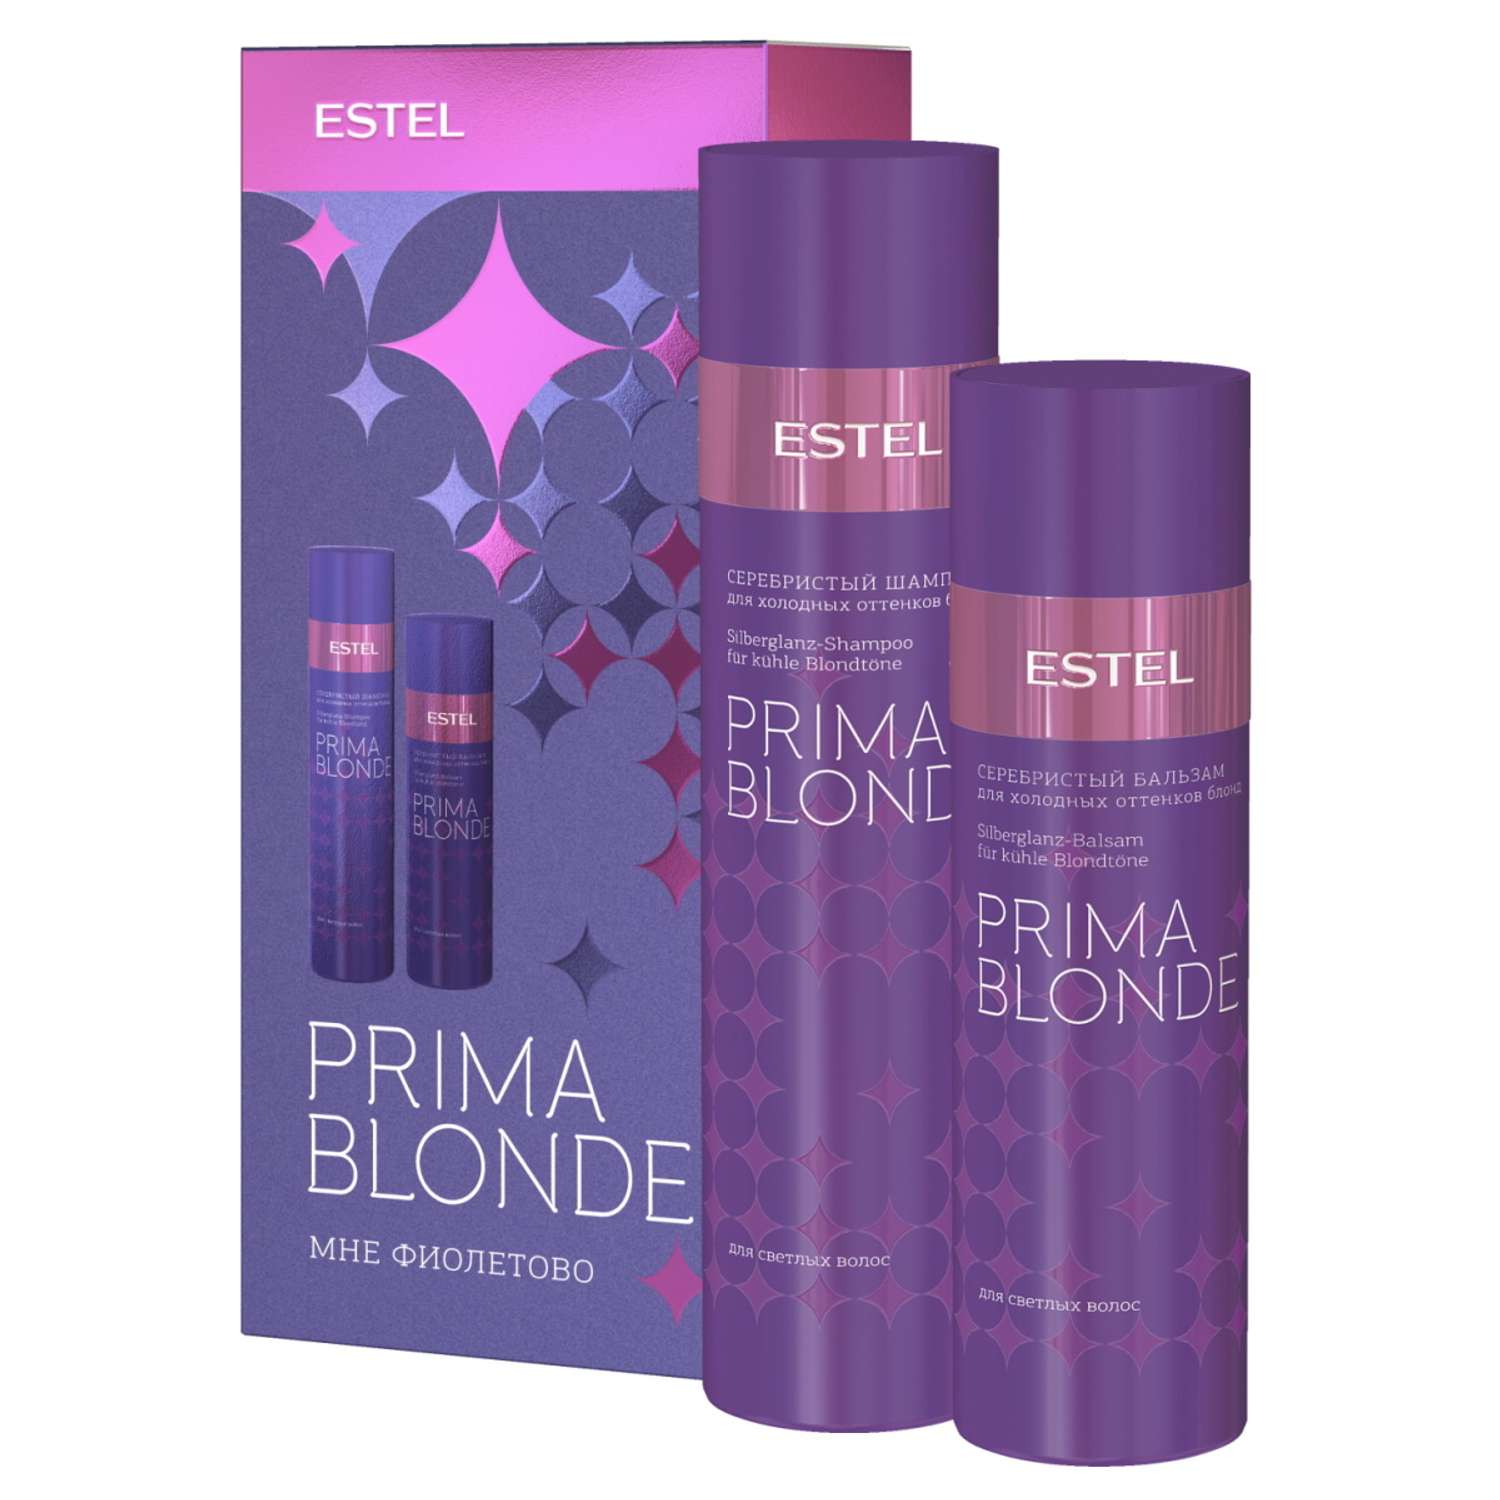 Косметический набор Estel Professional PRIMA BLONDE для холодных оттенков блонд Мне фиолетово 250+200 мл - фото 1